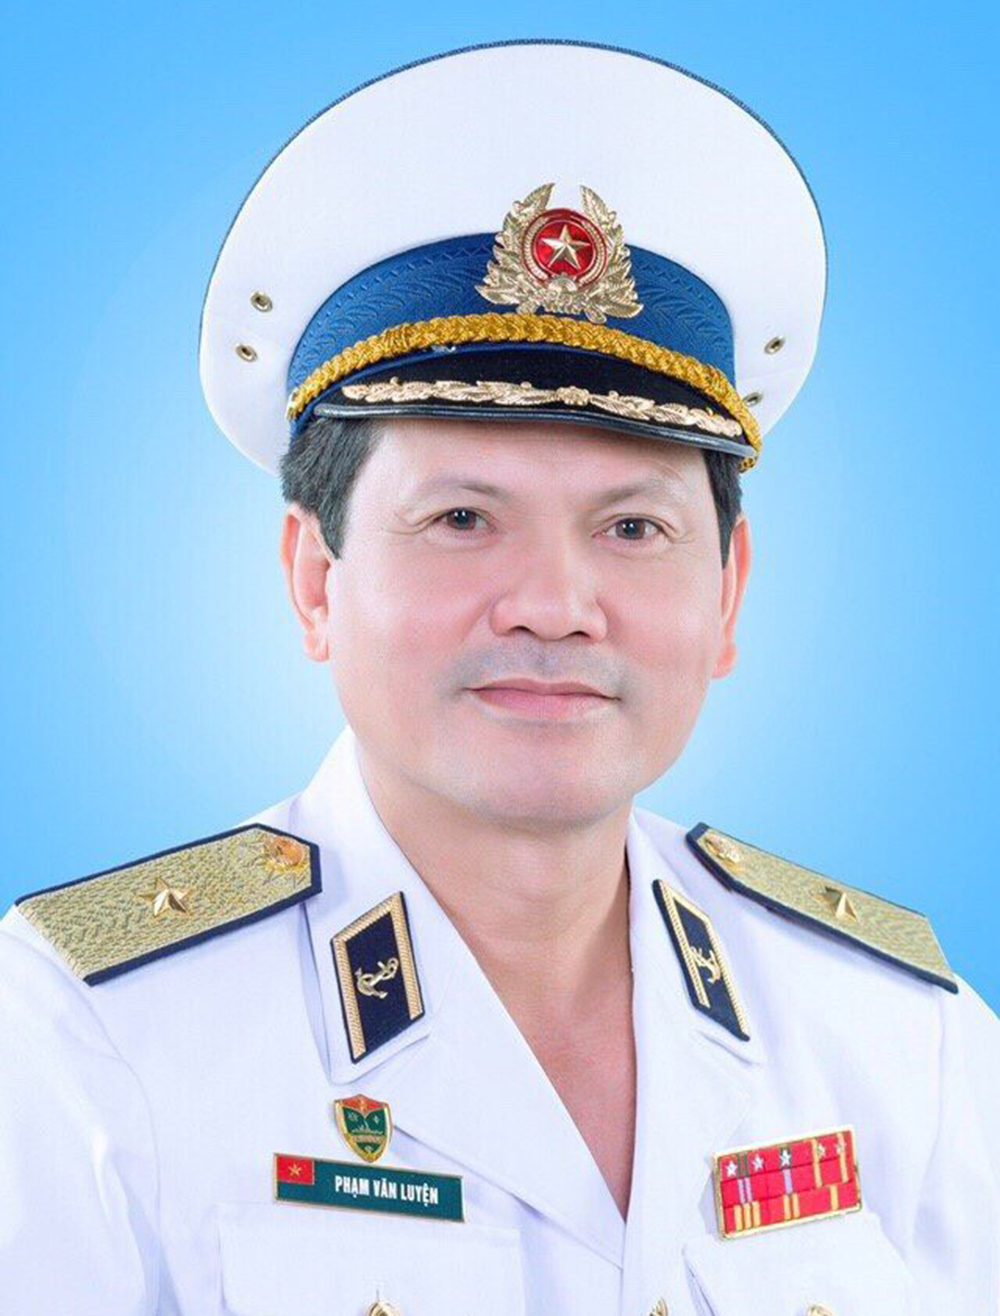 Chuẩn Đô đốc Phạm Văn Luyện